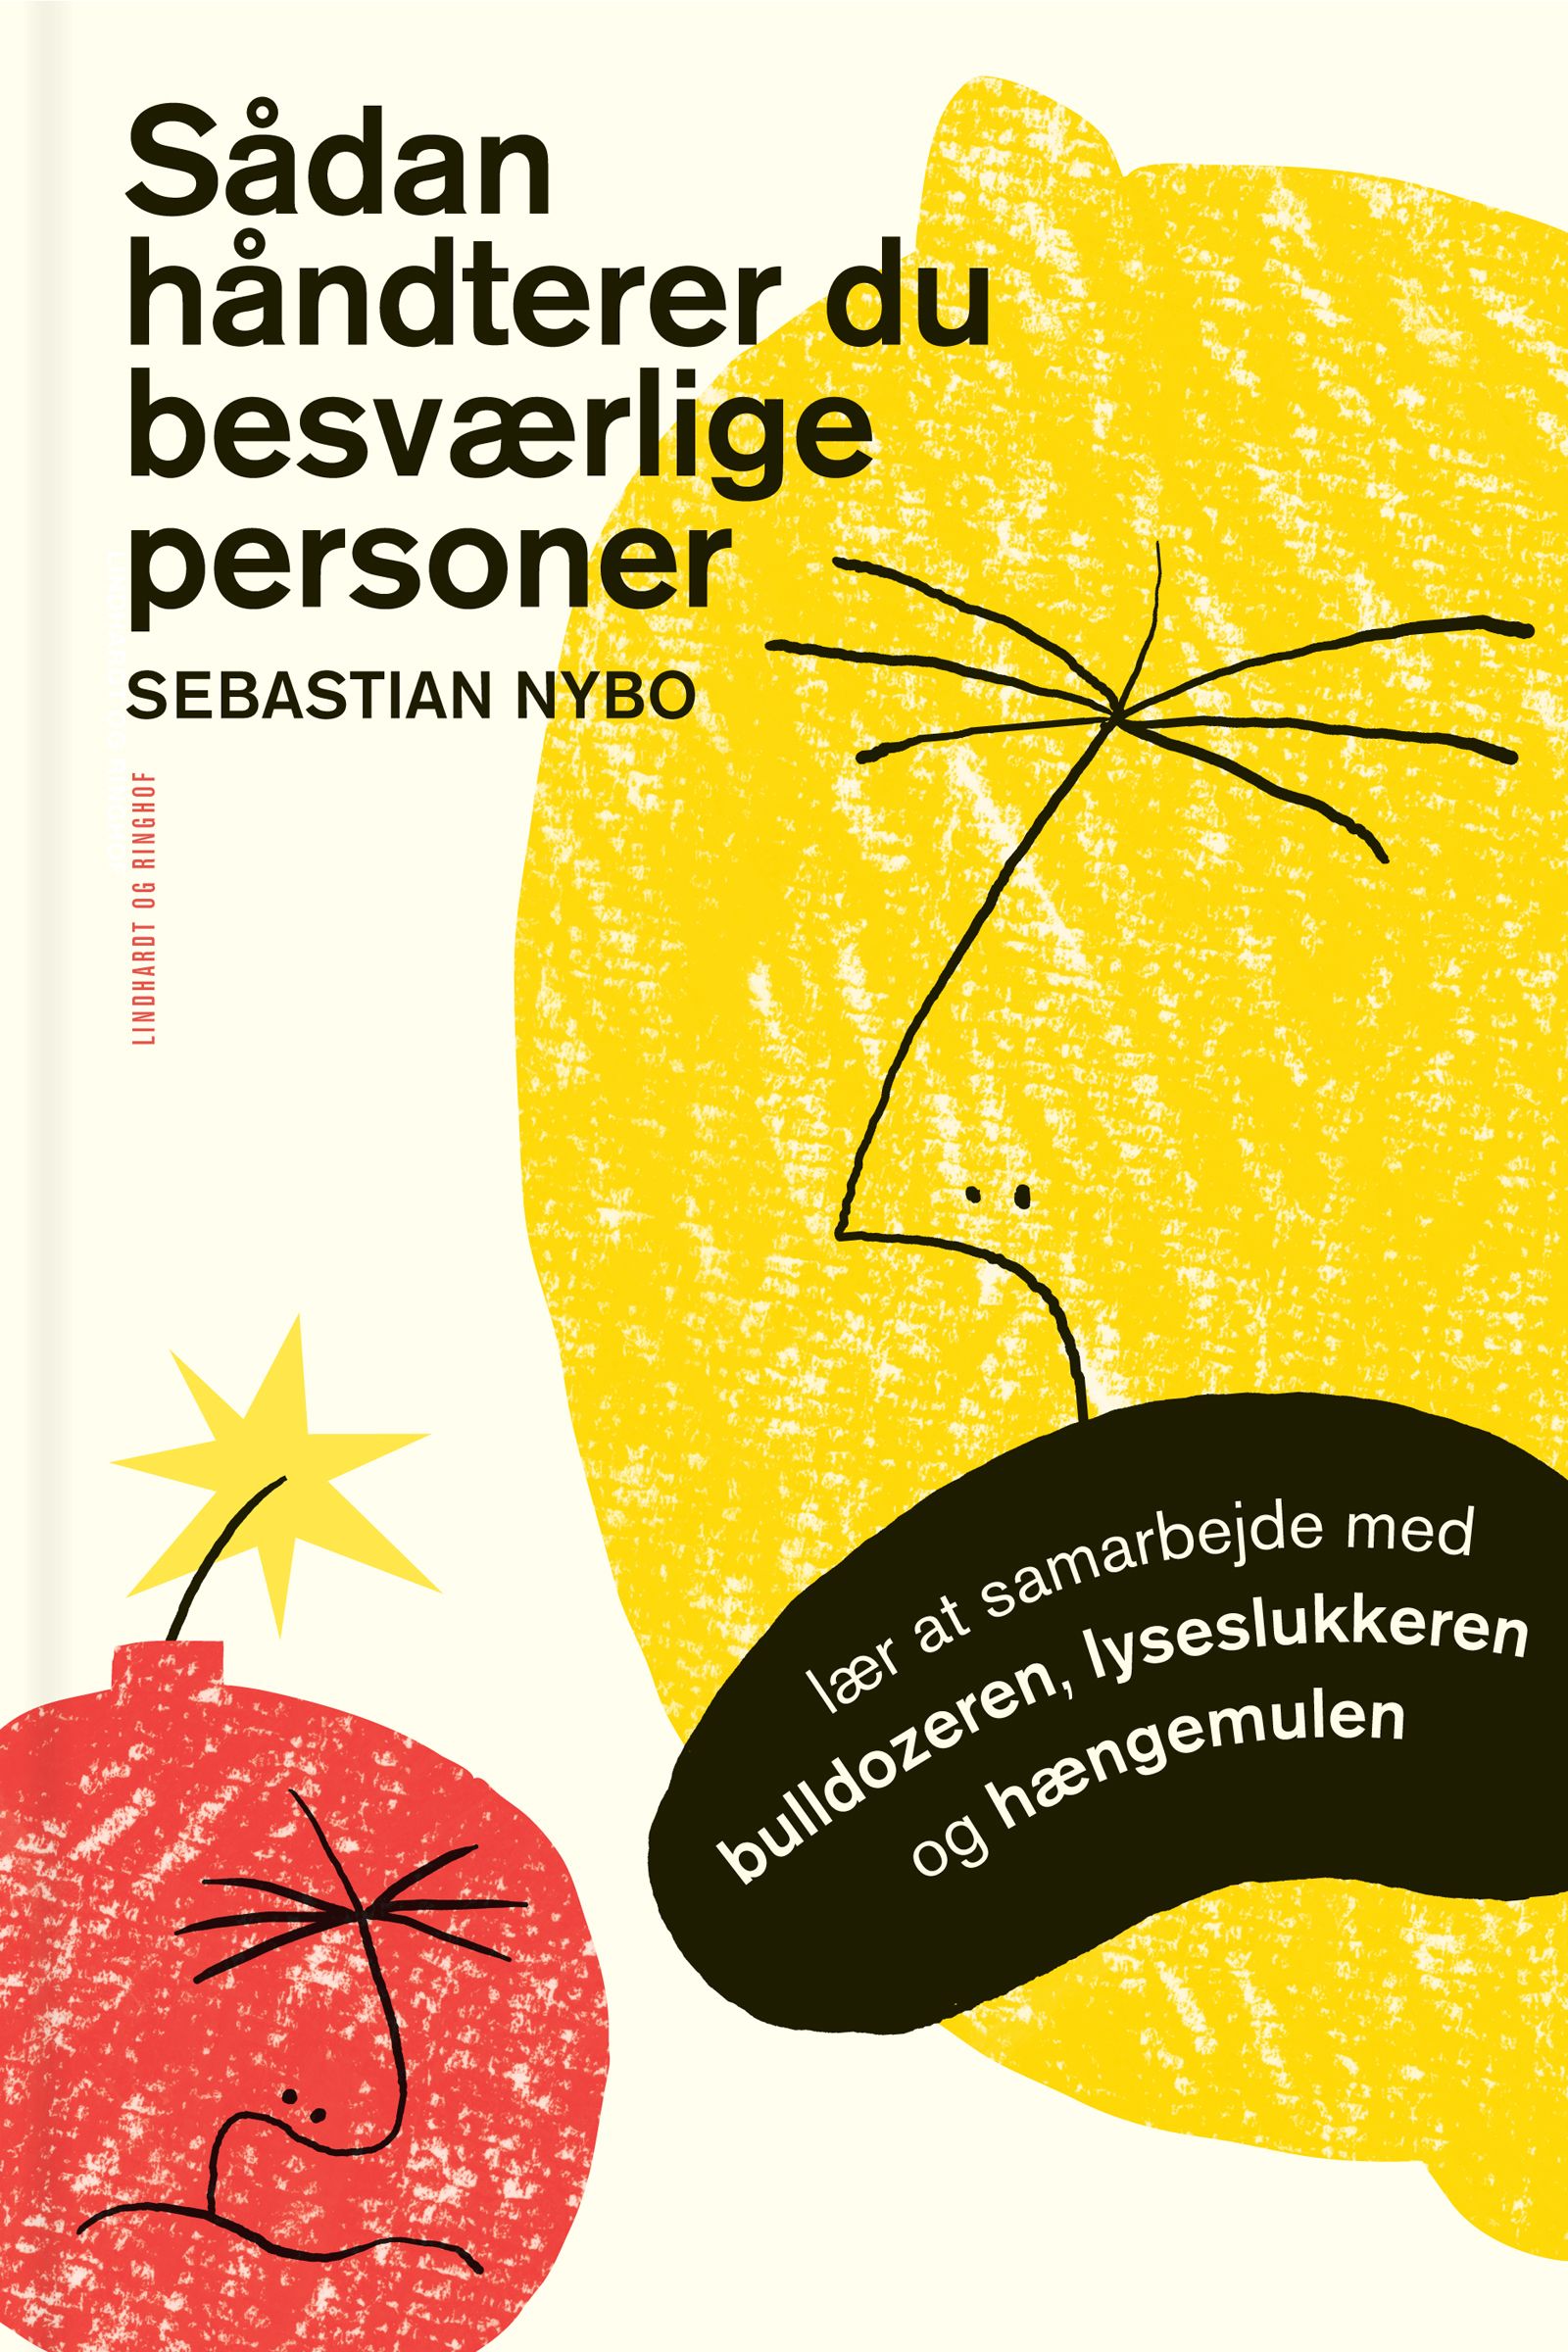 Sådan håndterer du besværlige personer, e-bok av Sebastian Nybo